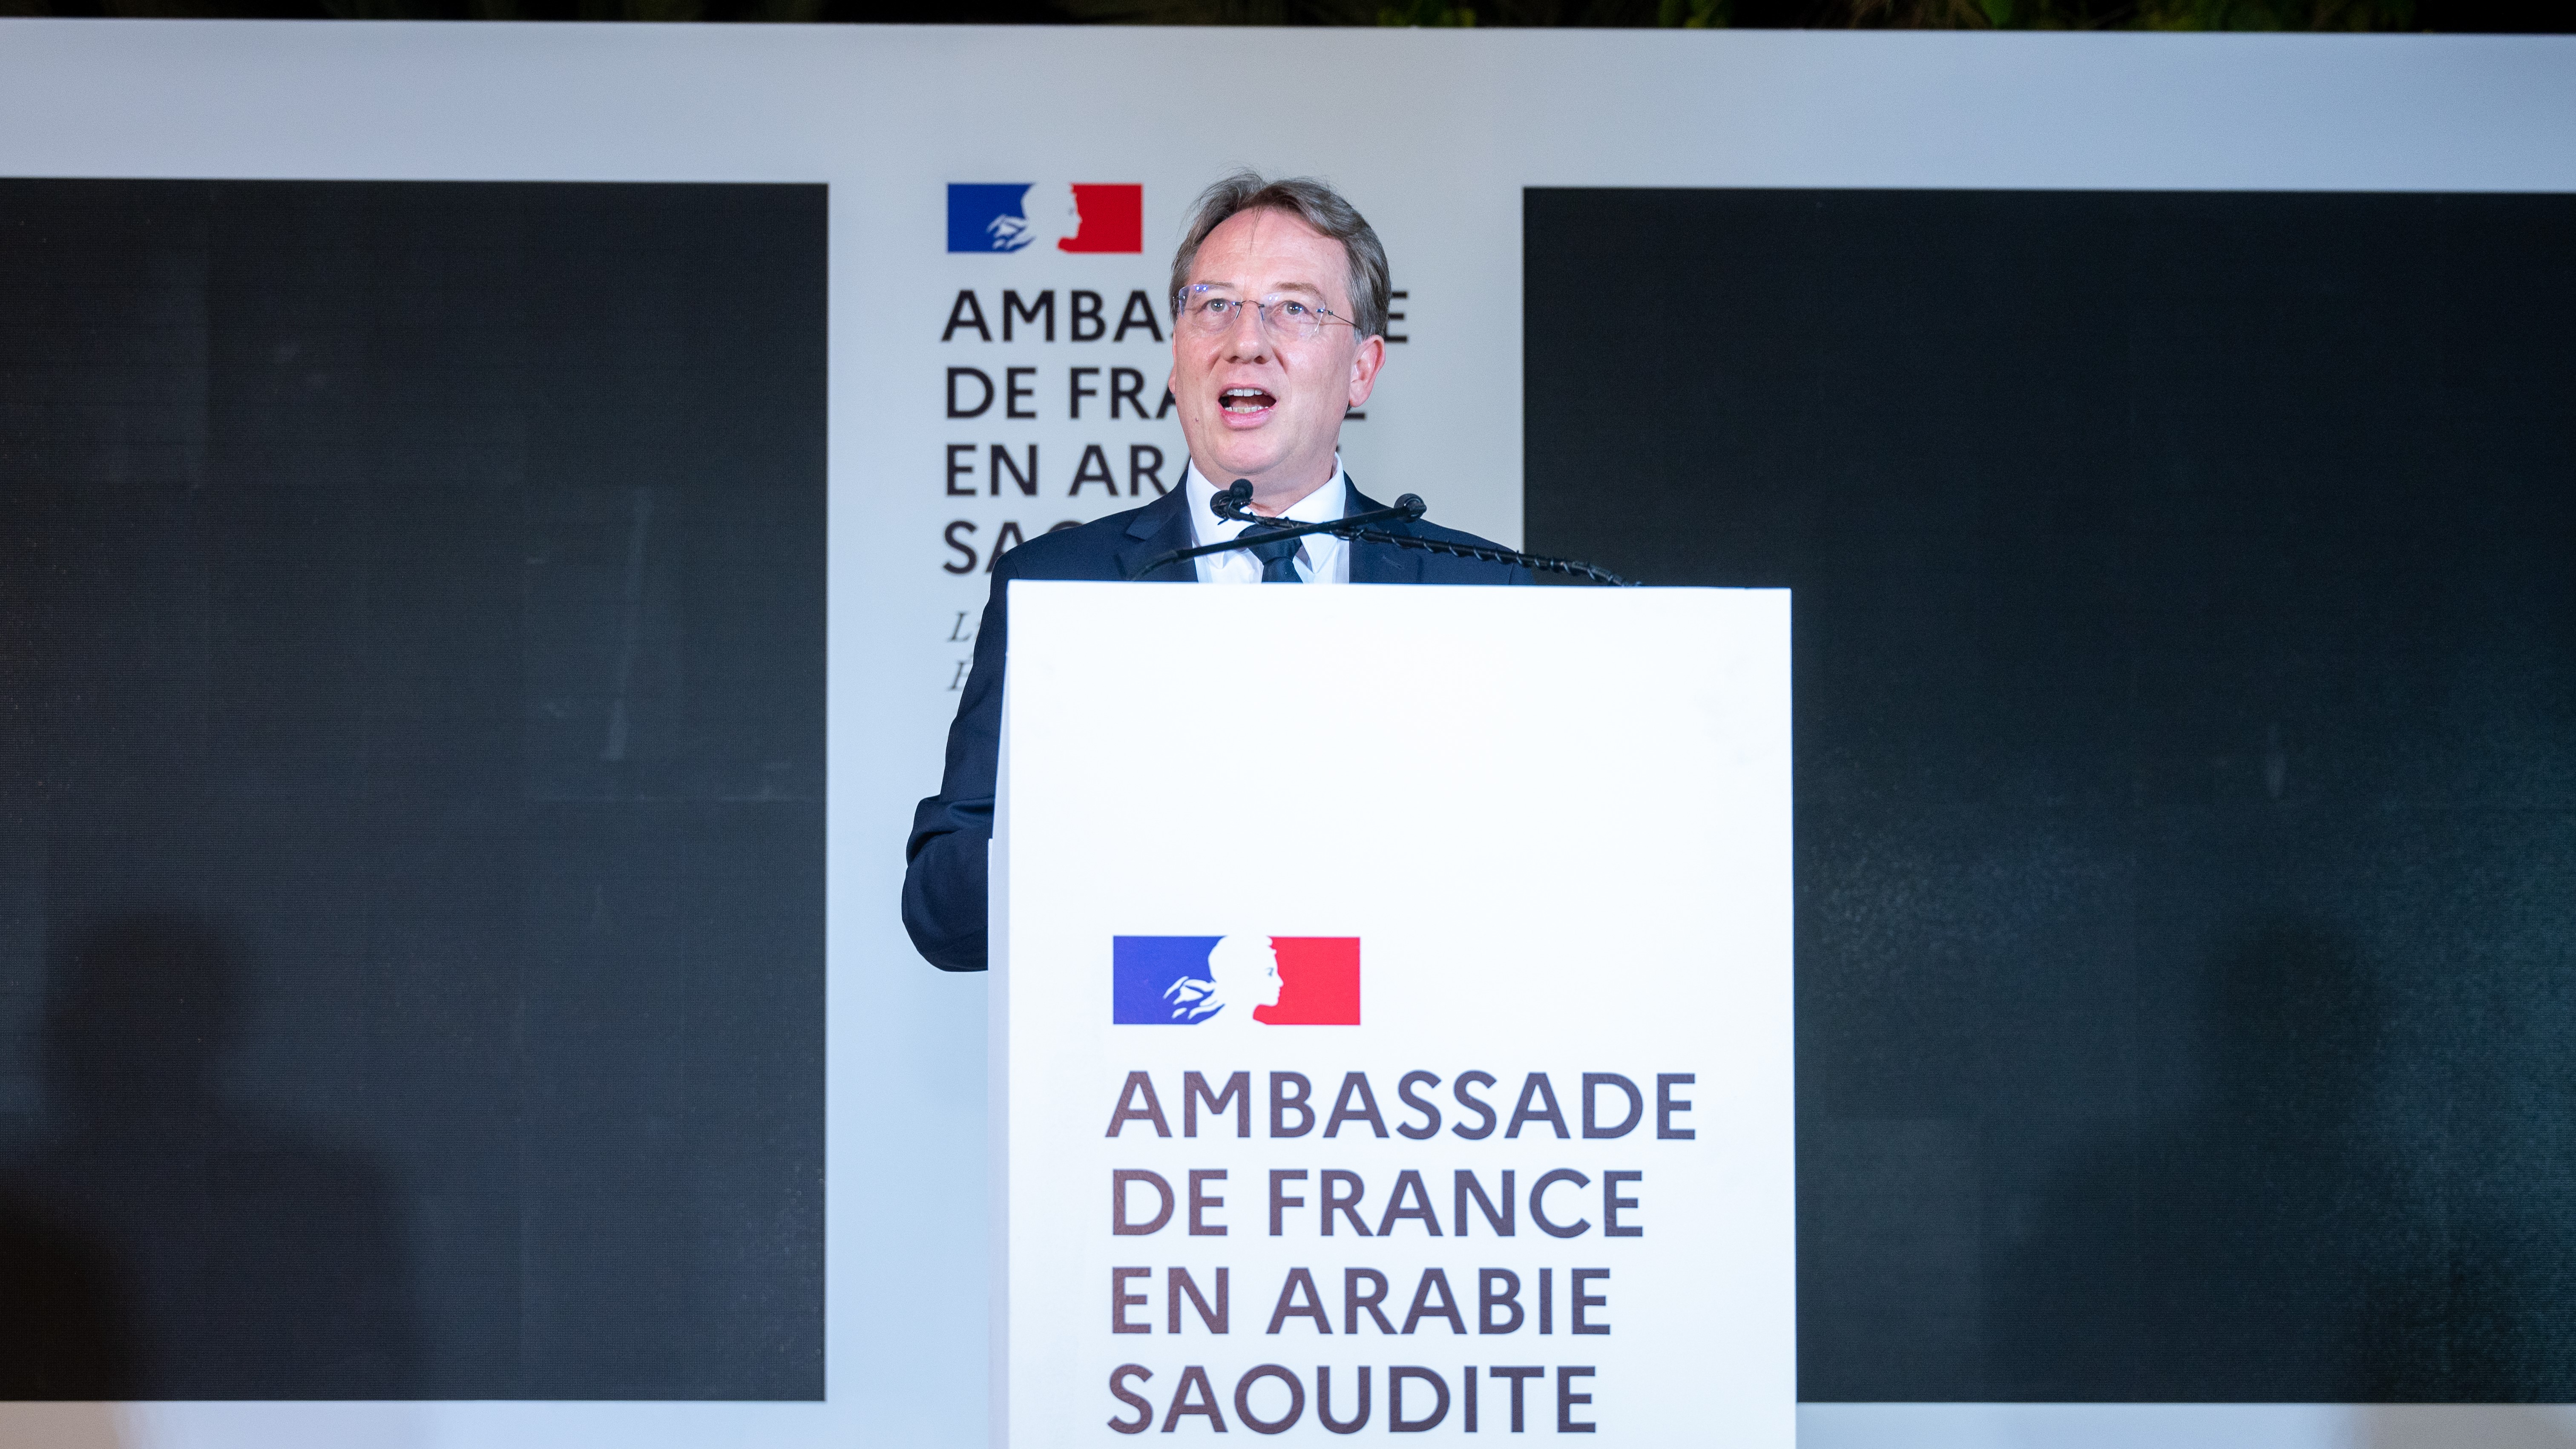 السفير الفرنسي بالرياض لودوفيك بوي في صورة نشرتها السفارة الفرنسية في المملكة العربية السعودية على موقعها الإلكتروني